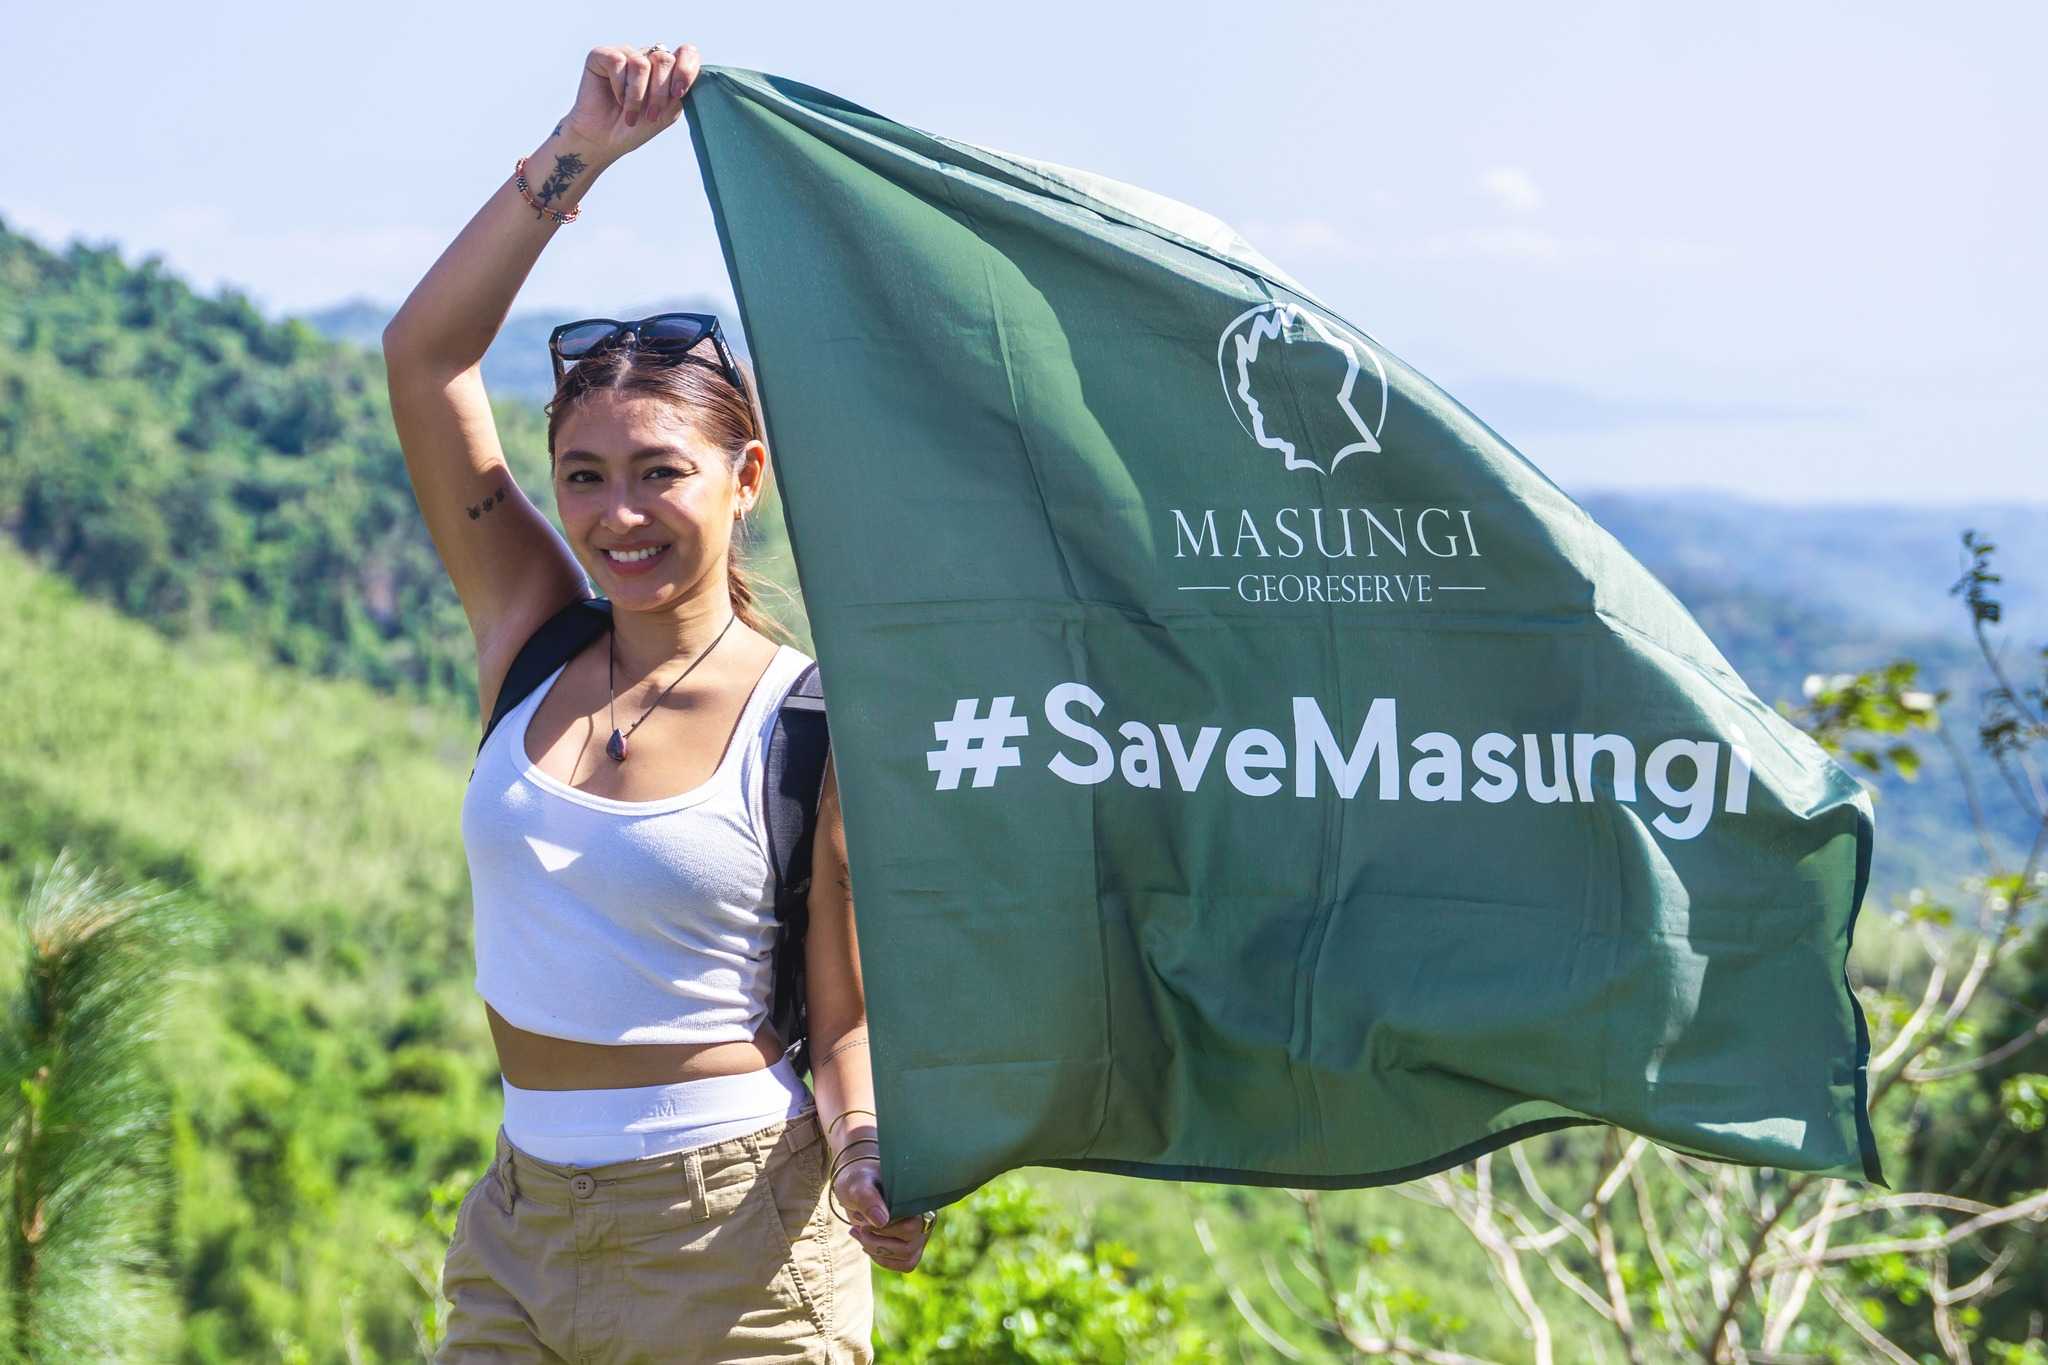 LOOK: Nadine Lustre participates in Masungi Georeserve activities